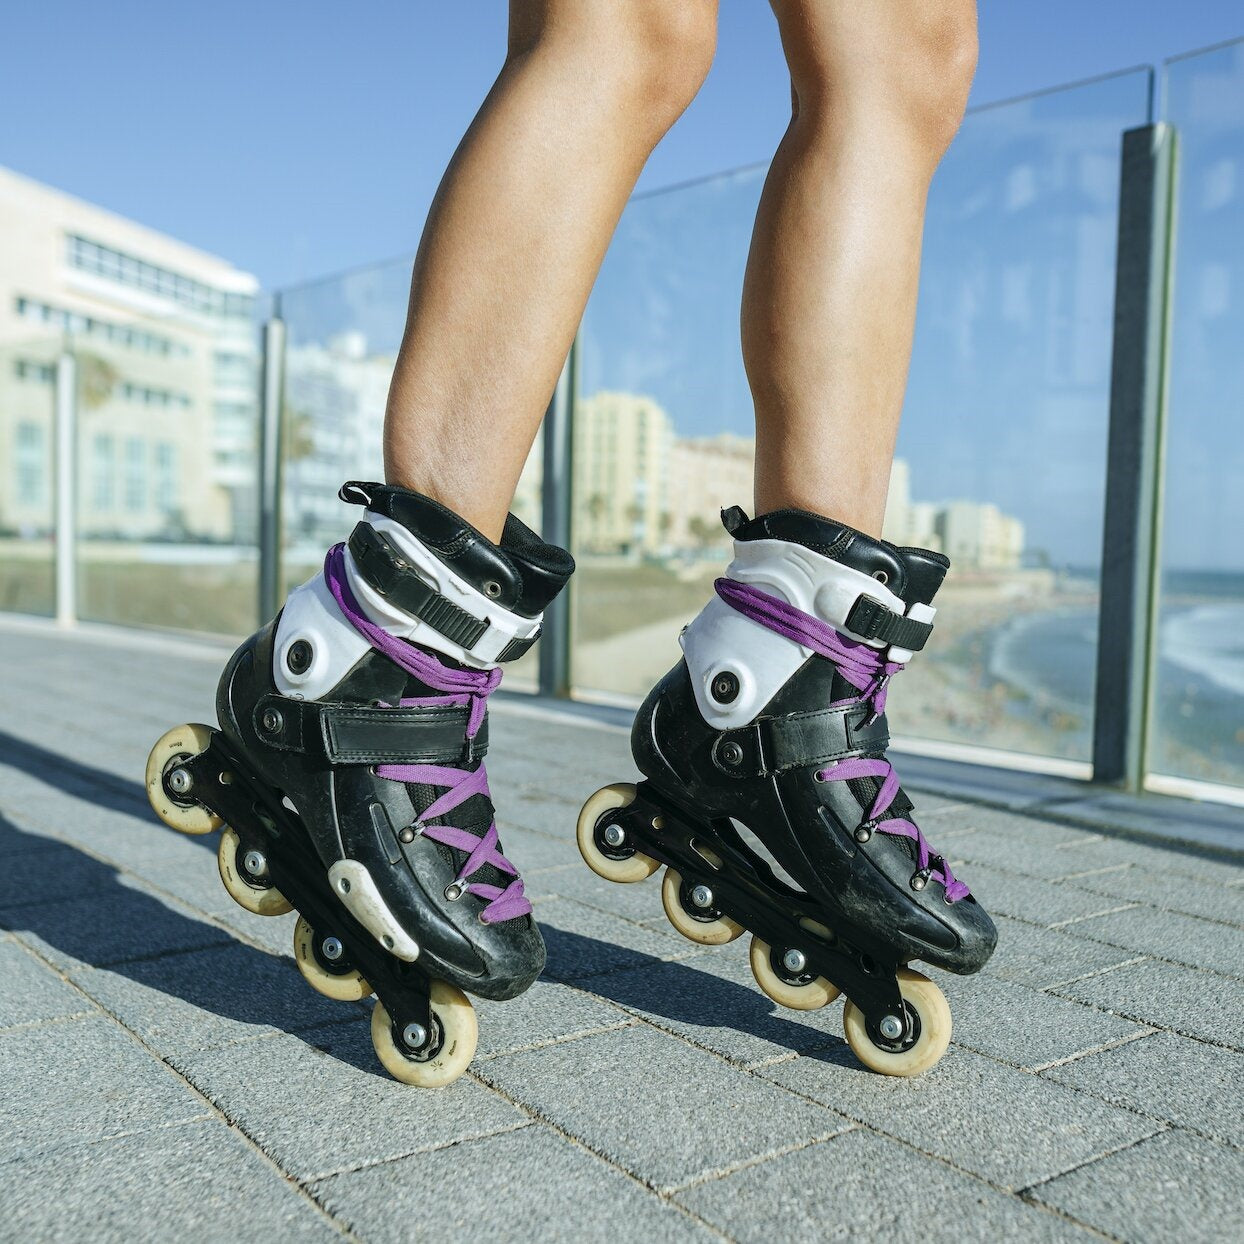 Inline Skates Roller Skating Shoes For Adults Adjustable Inline Skates